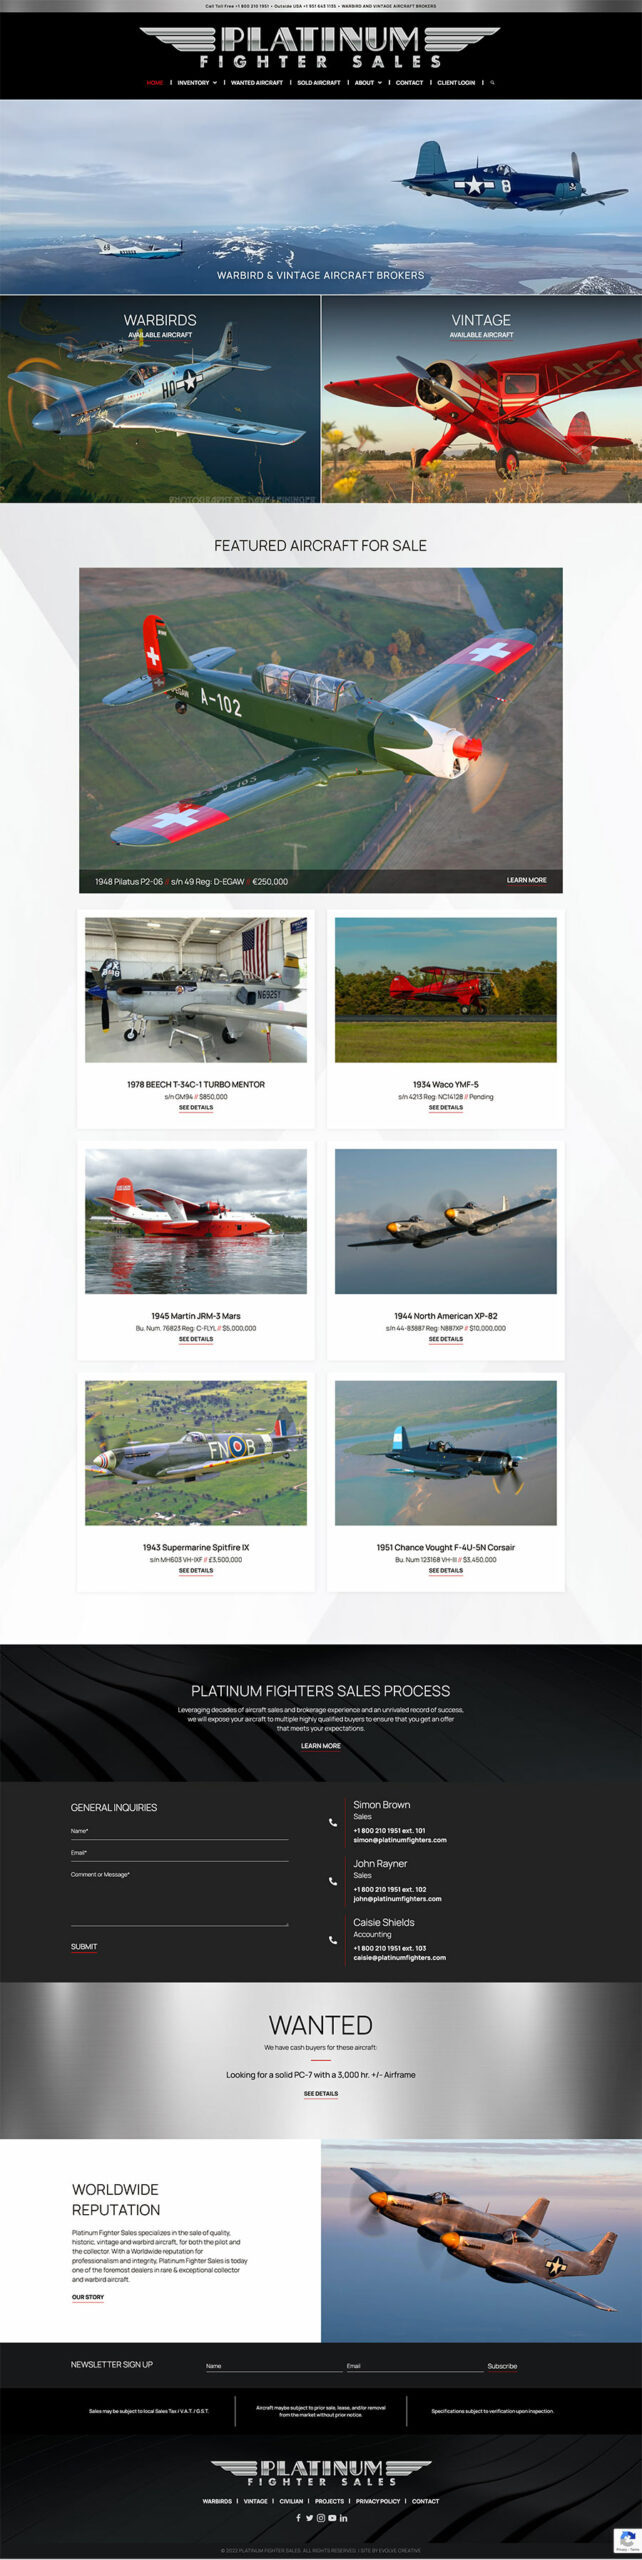 Aircraft sales website development